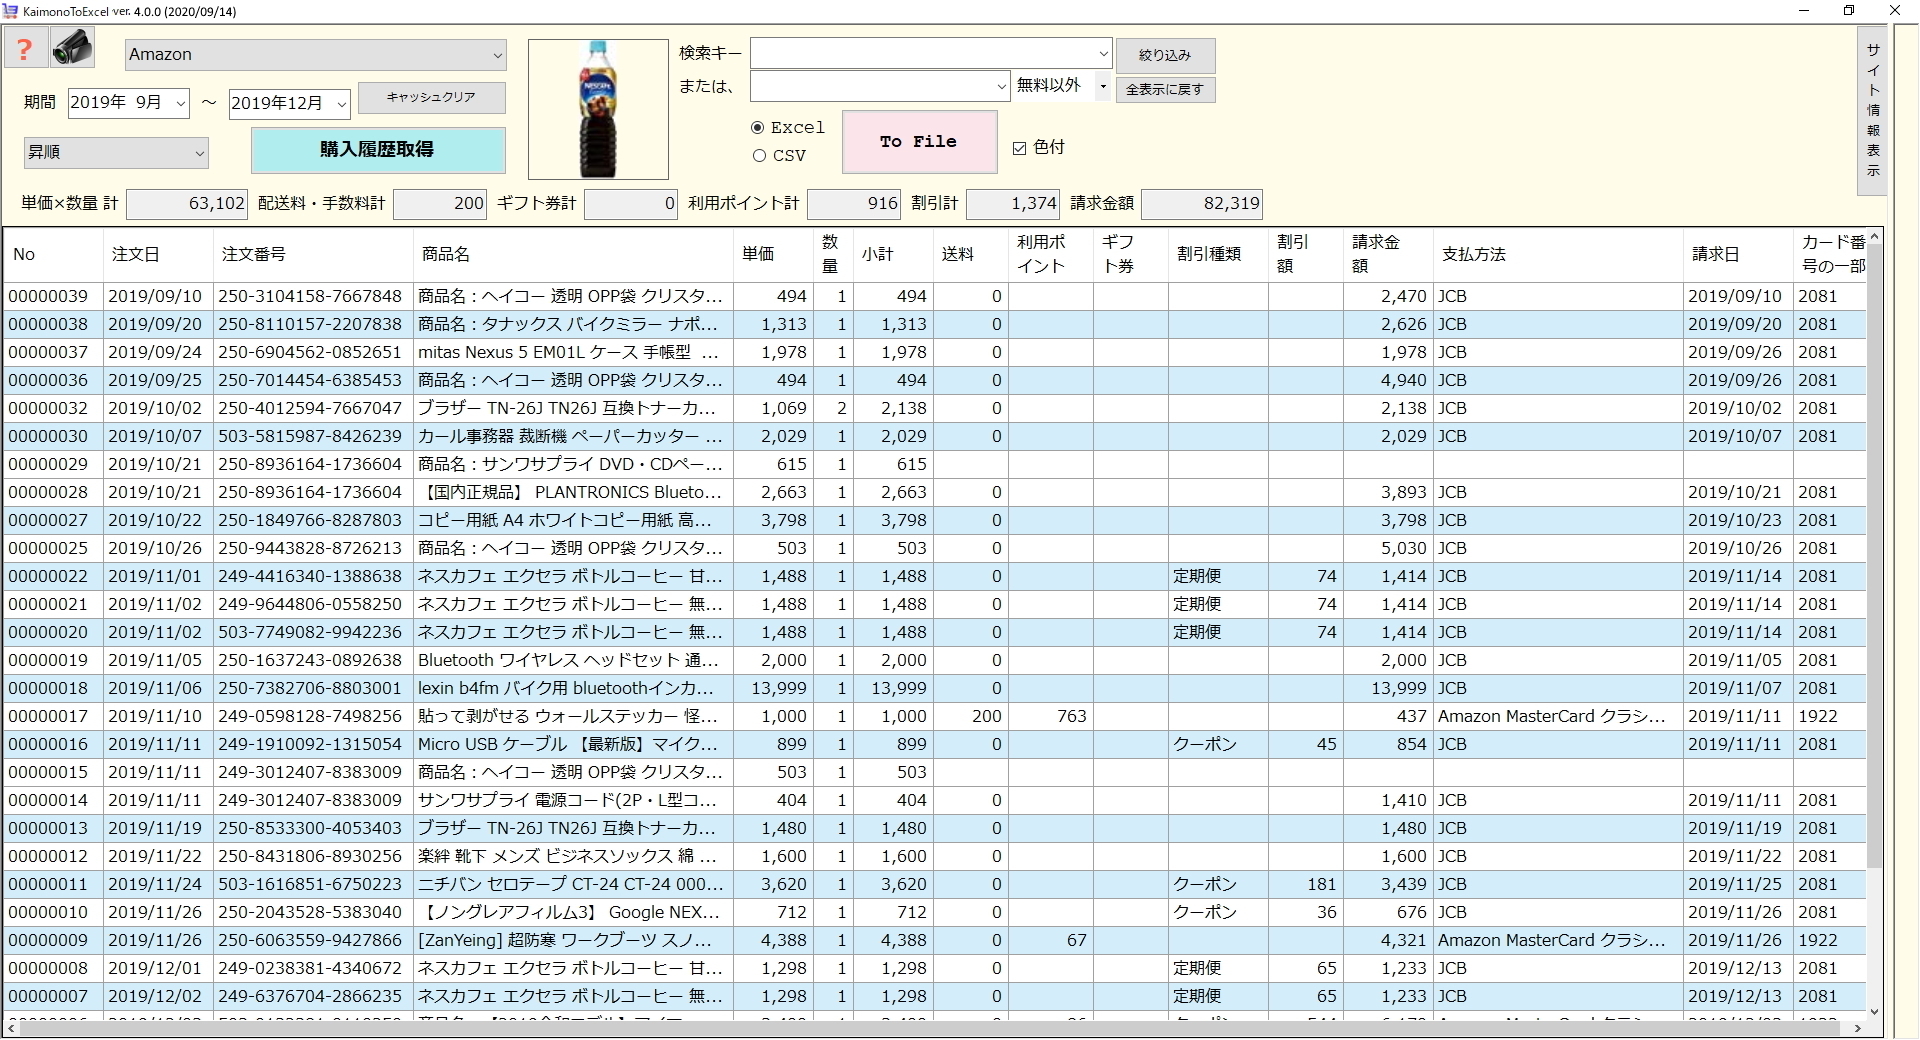 ネットショッピングの履歴をリスト化してexcel出力 事務処理軽減アプリ Kaimonotoexcel Ver 4 0 リリース Sankeibiz サンケイビズ 自分を磨く経済情報サイト